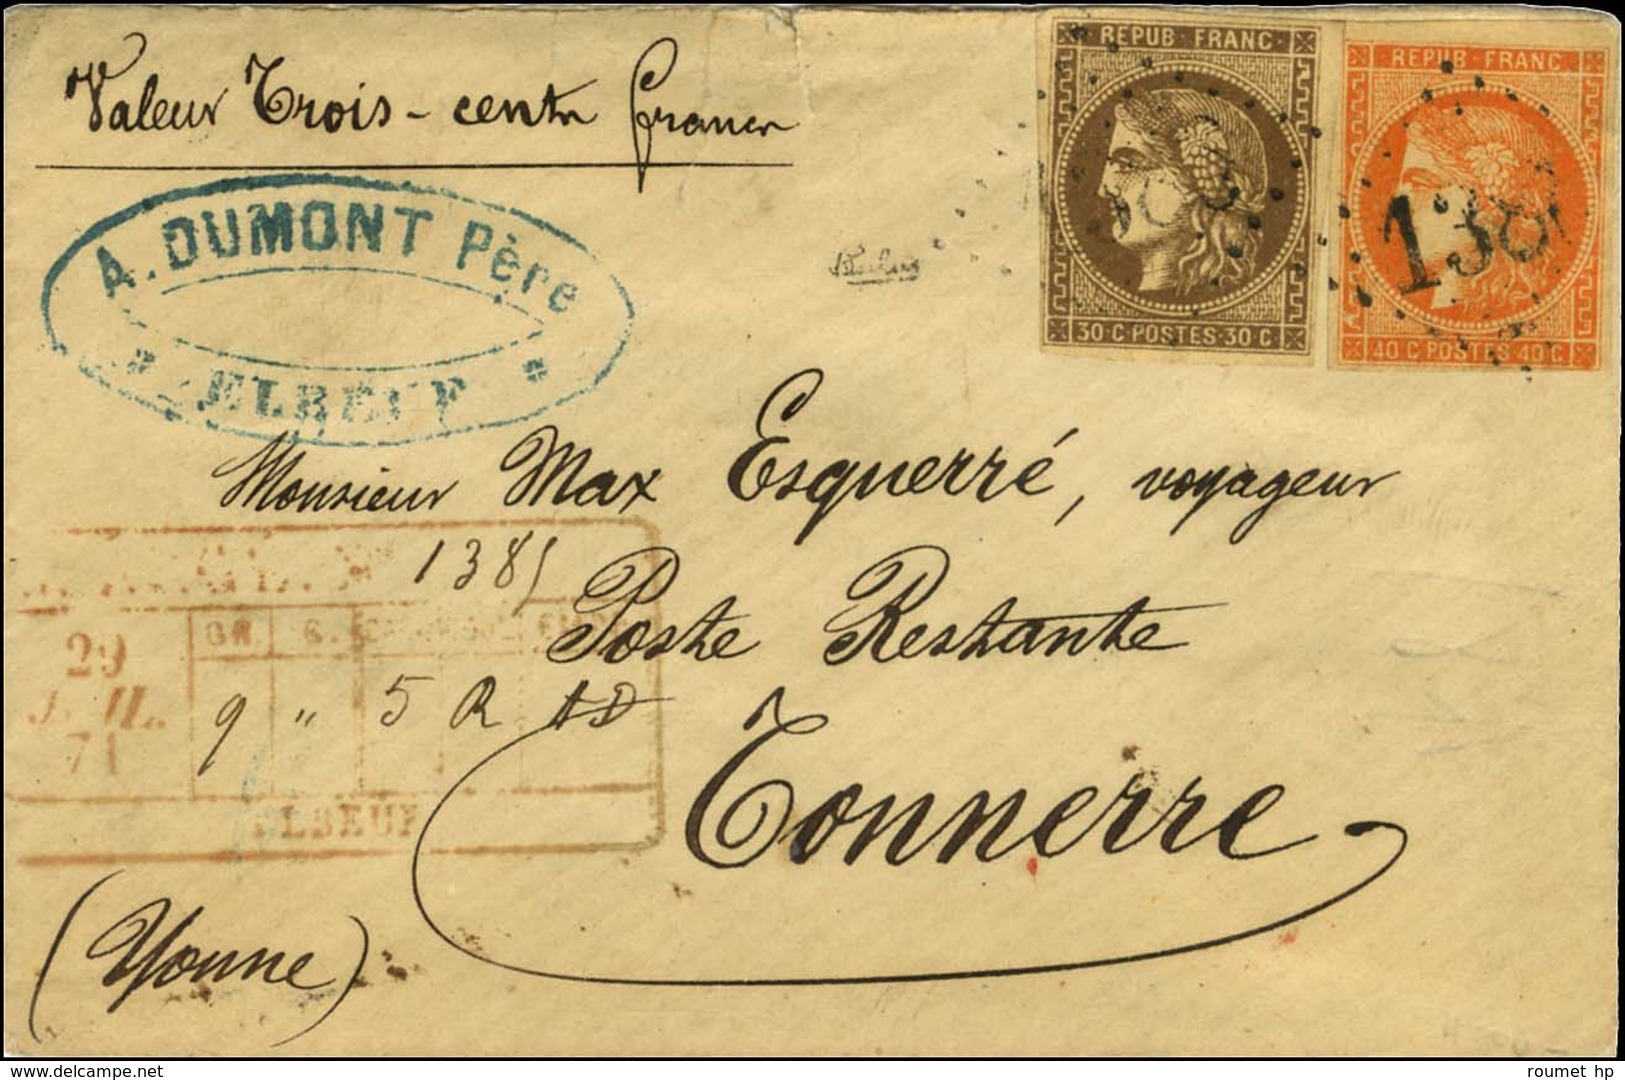 GC 1386 / N° 47 + 48 Descriptif De Chargement Rouge ELBEUF Sur Lettre Chargée Pour Tonnerre. 1871. - TB / SUP. - R. - 1870 Emisión De Bordeaux